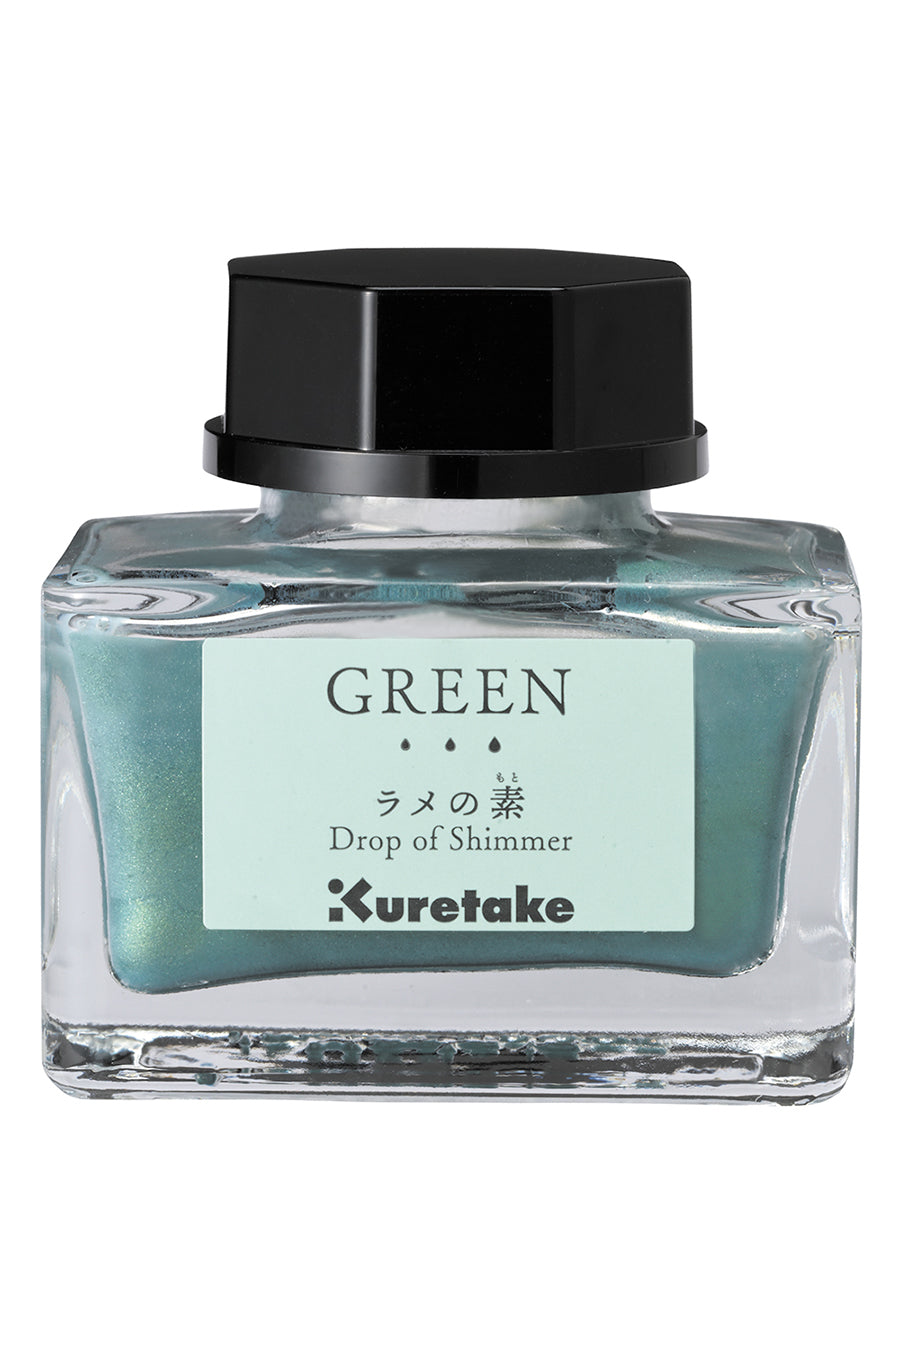 Kuretake® Drop Of Shimmer Ink